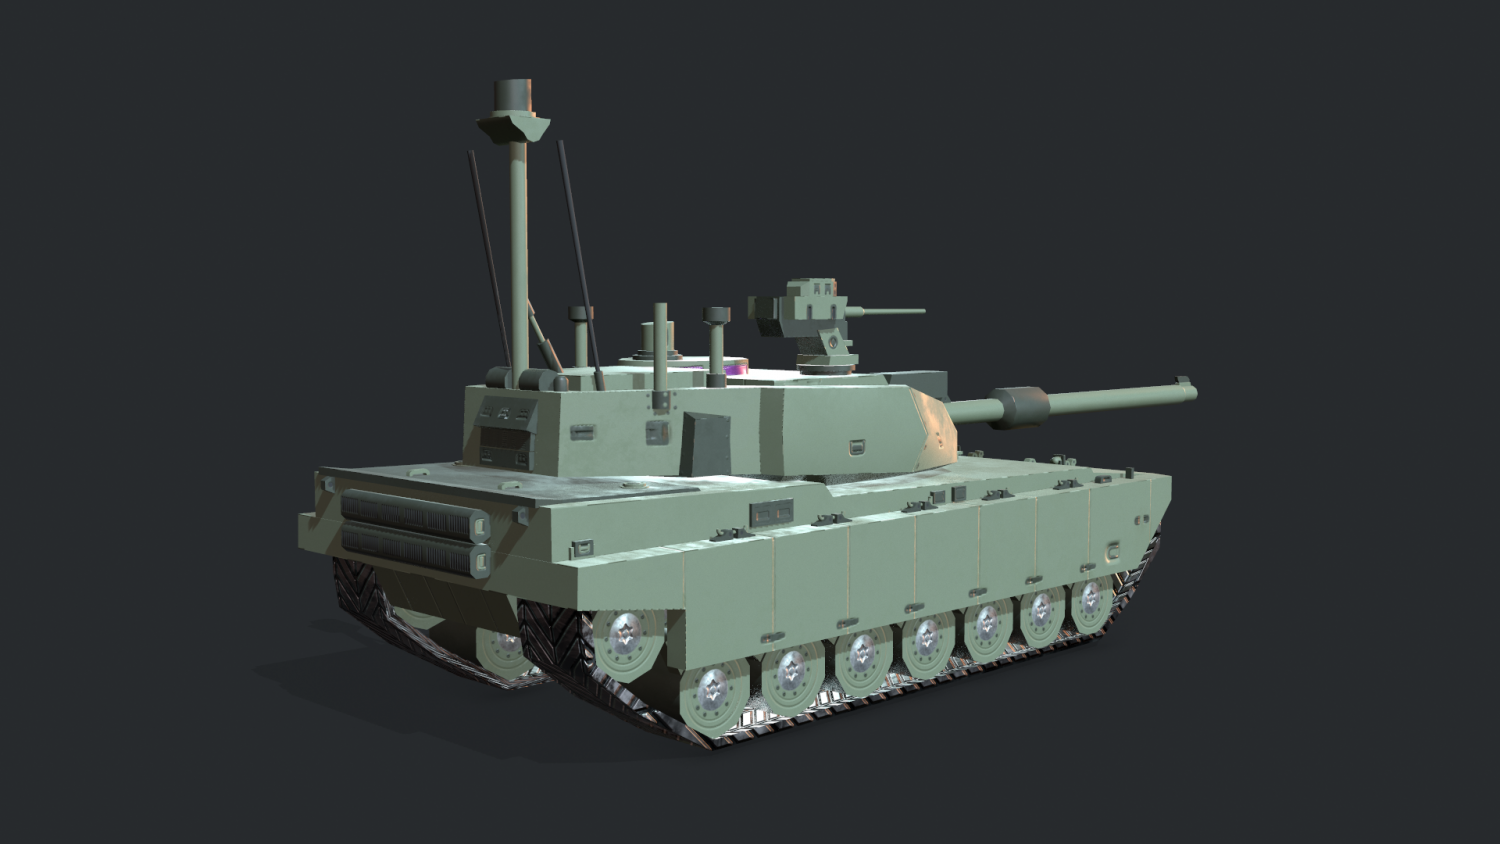 MBT Concept Art. Unihertz tank global